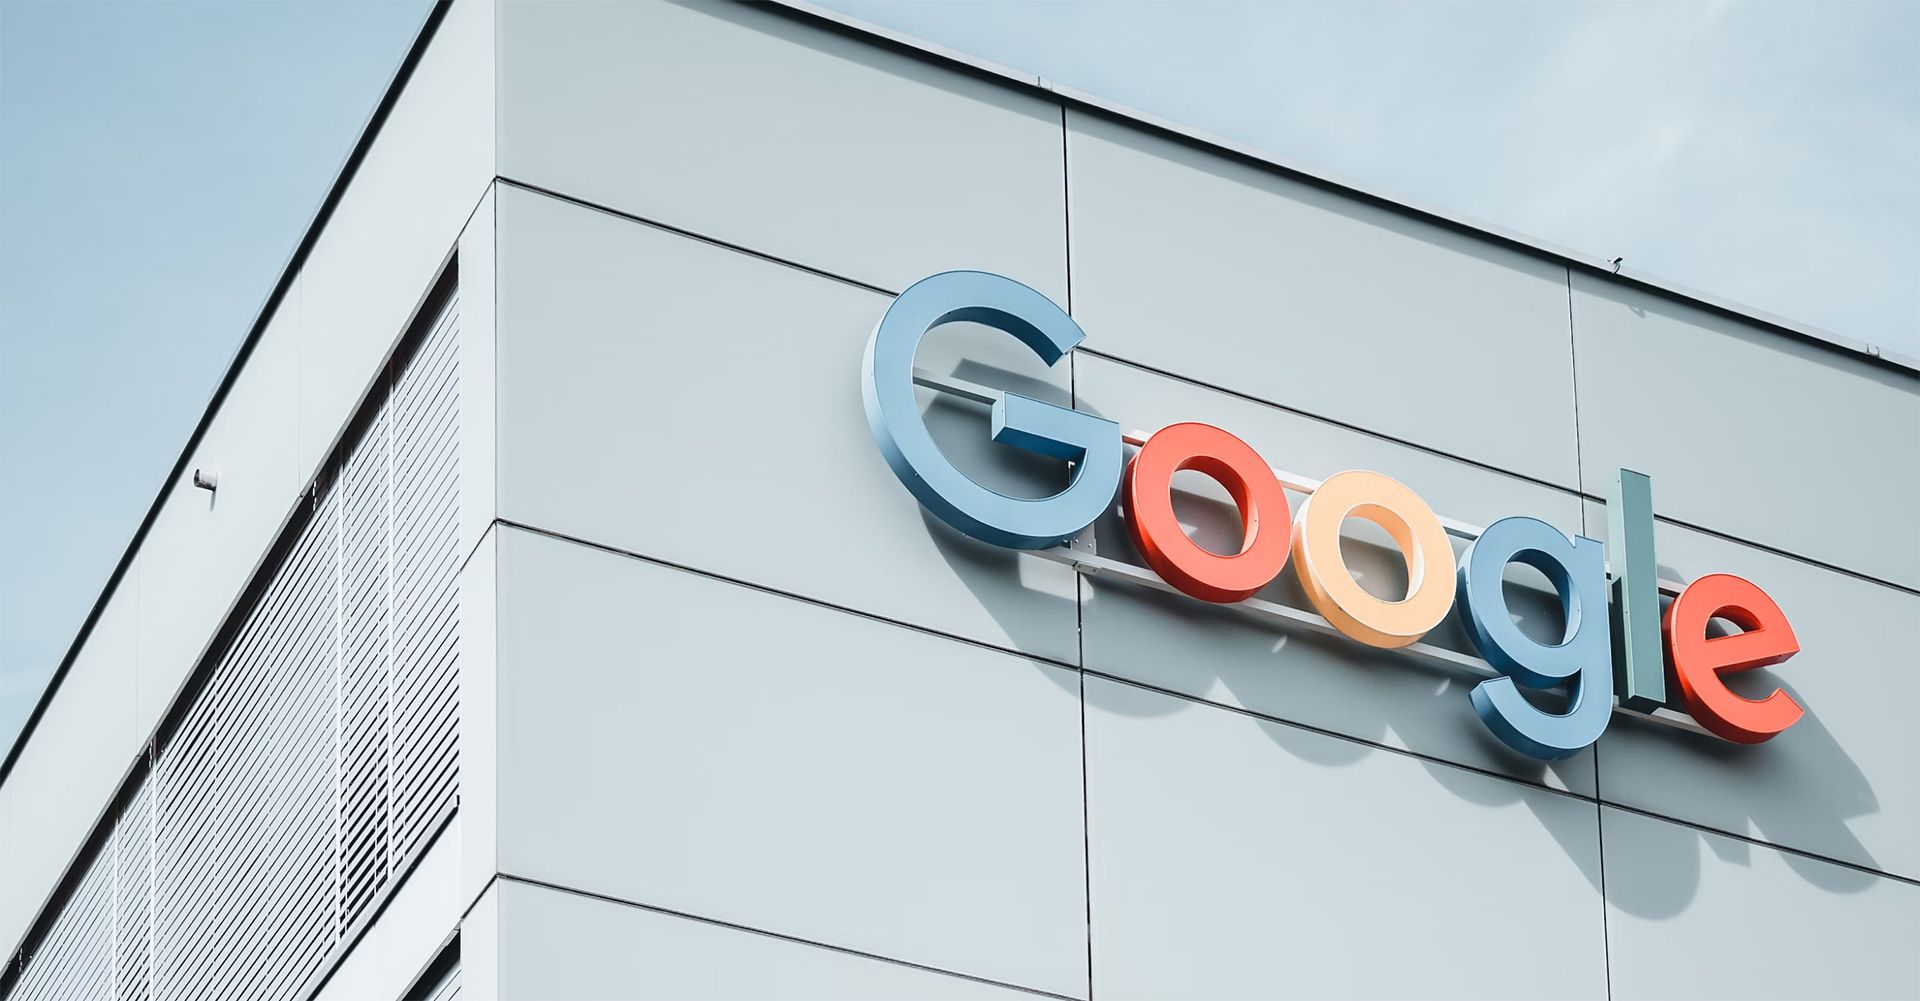 Google-Logo an der Fassade eines modernen Bürogebäudes unter blauem Himmel.